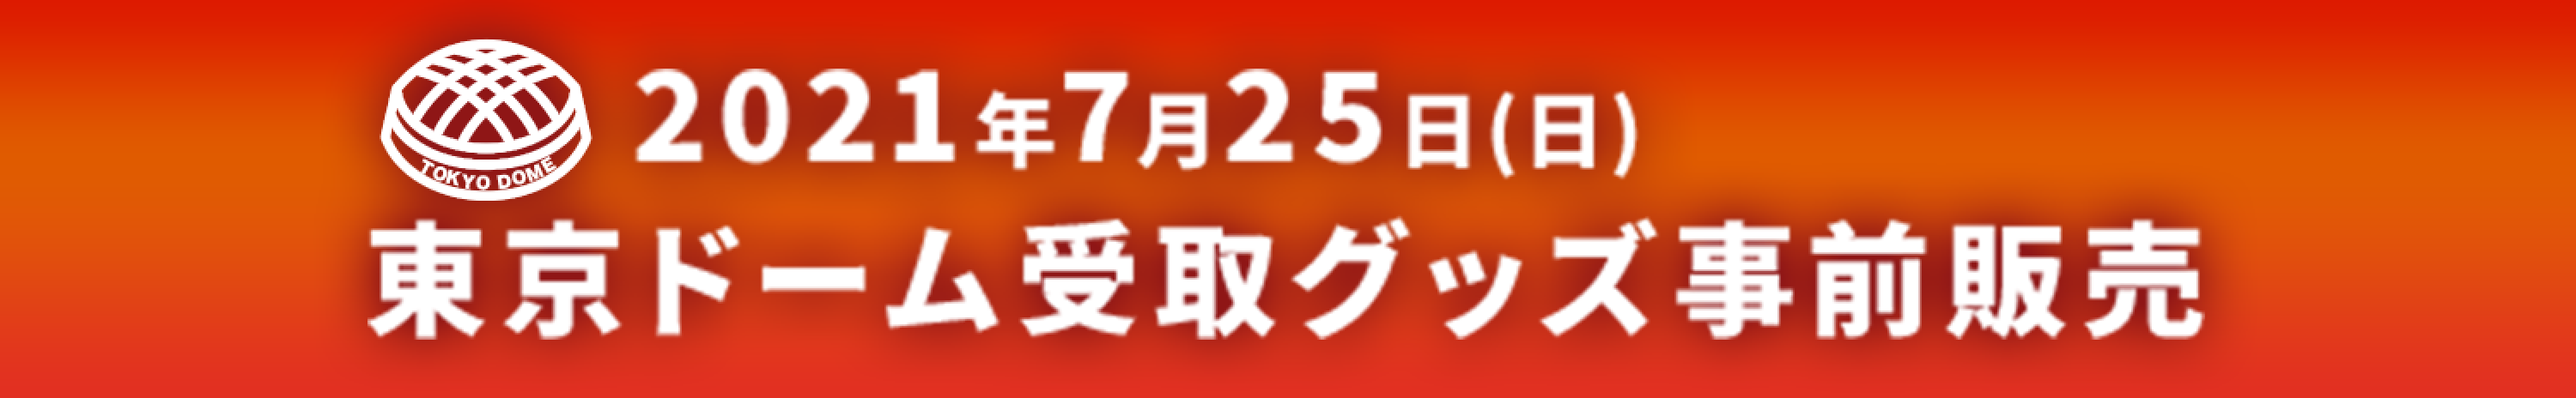 映画『ゴジラvsコング』Presents WRESTLE GRAND SLAM 東京ドーム会場受取公式ショップ_スケジュール